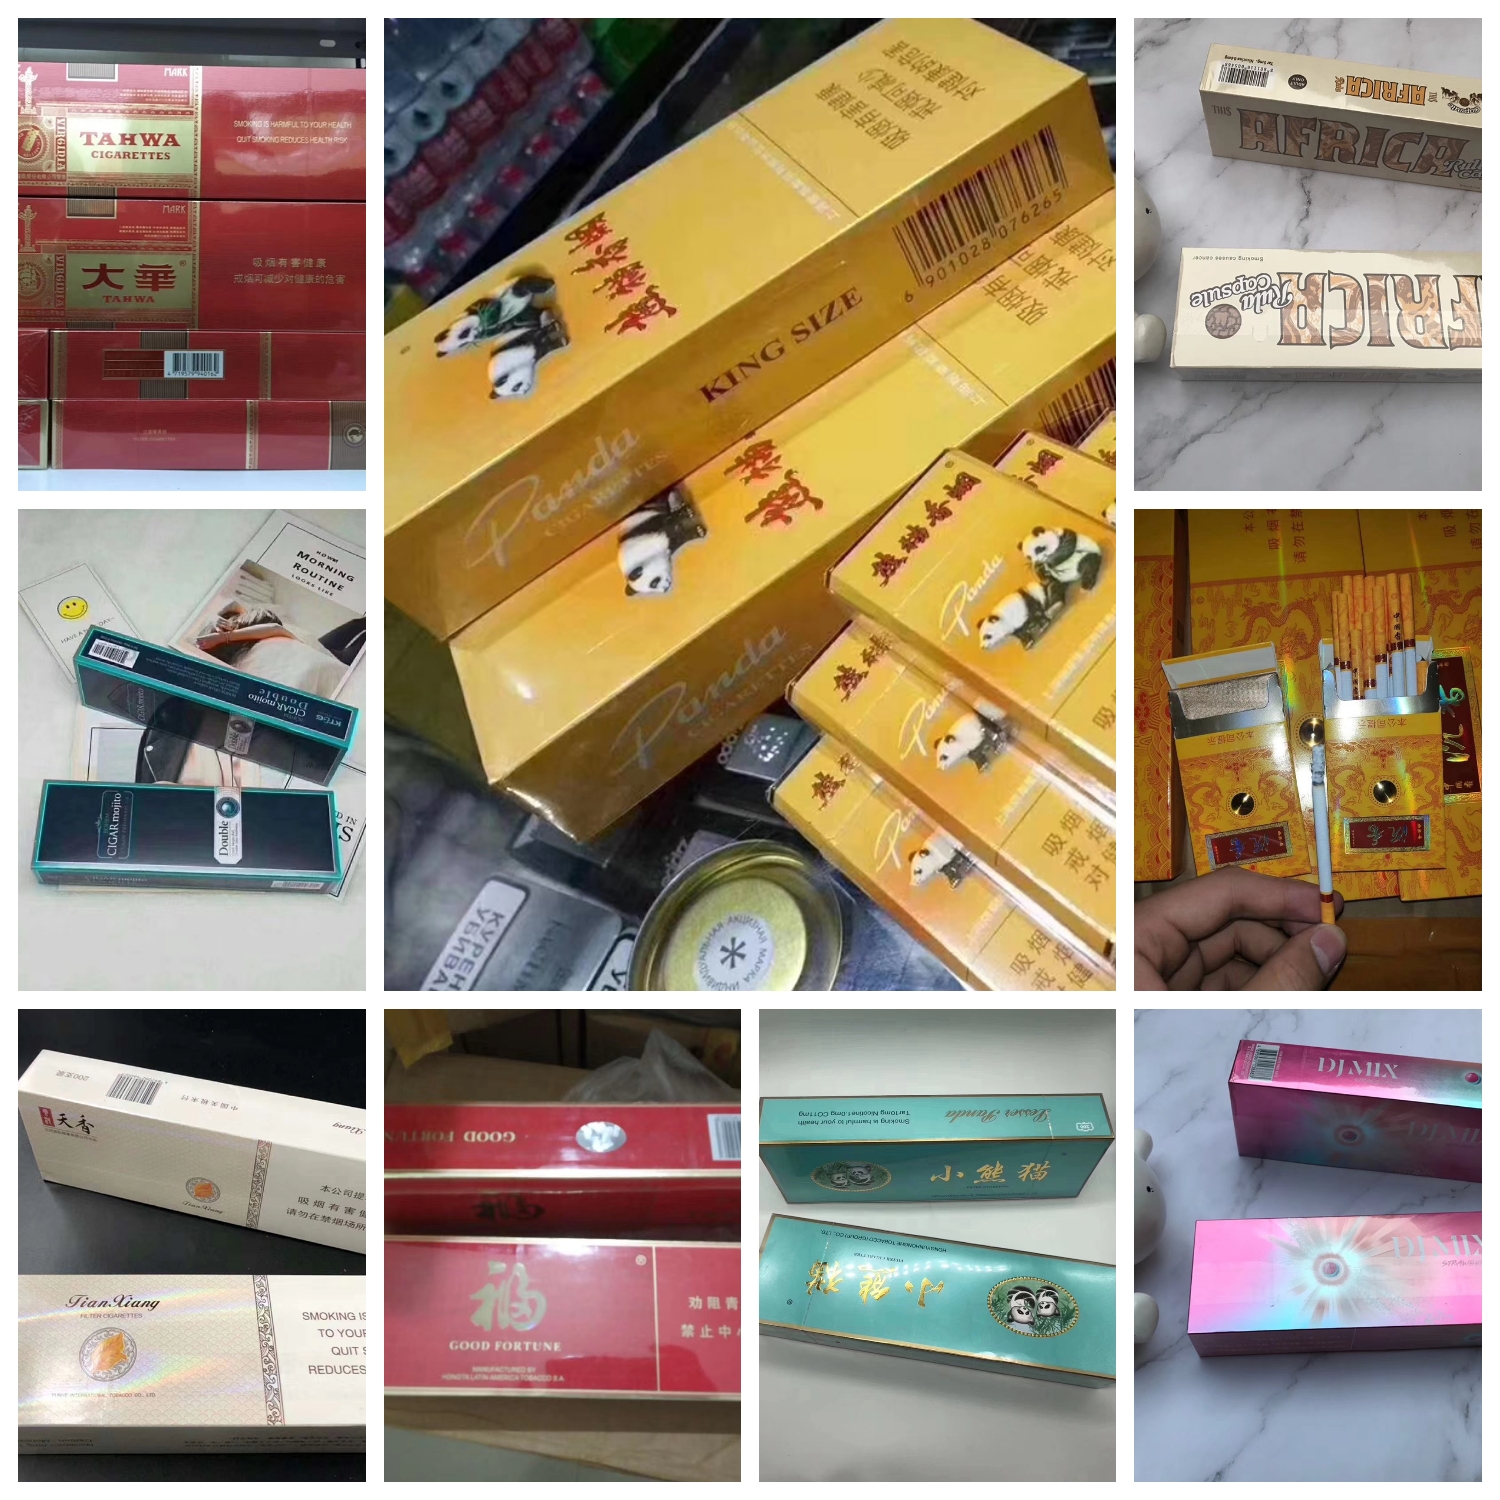 越南烟的品牌大全图片_越南烟_越南烟为什么这么便宜